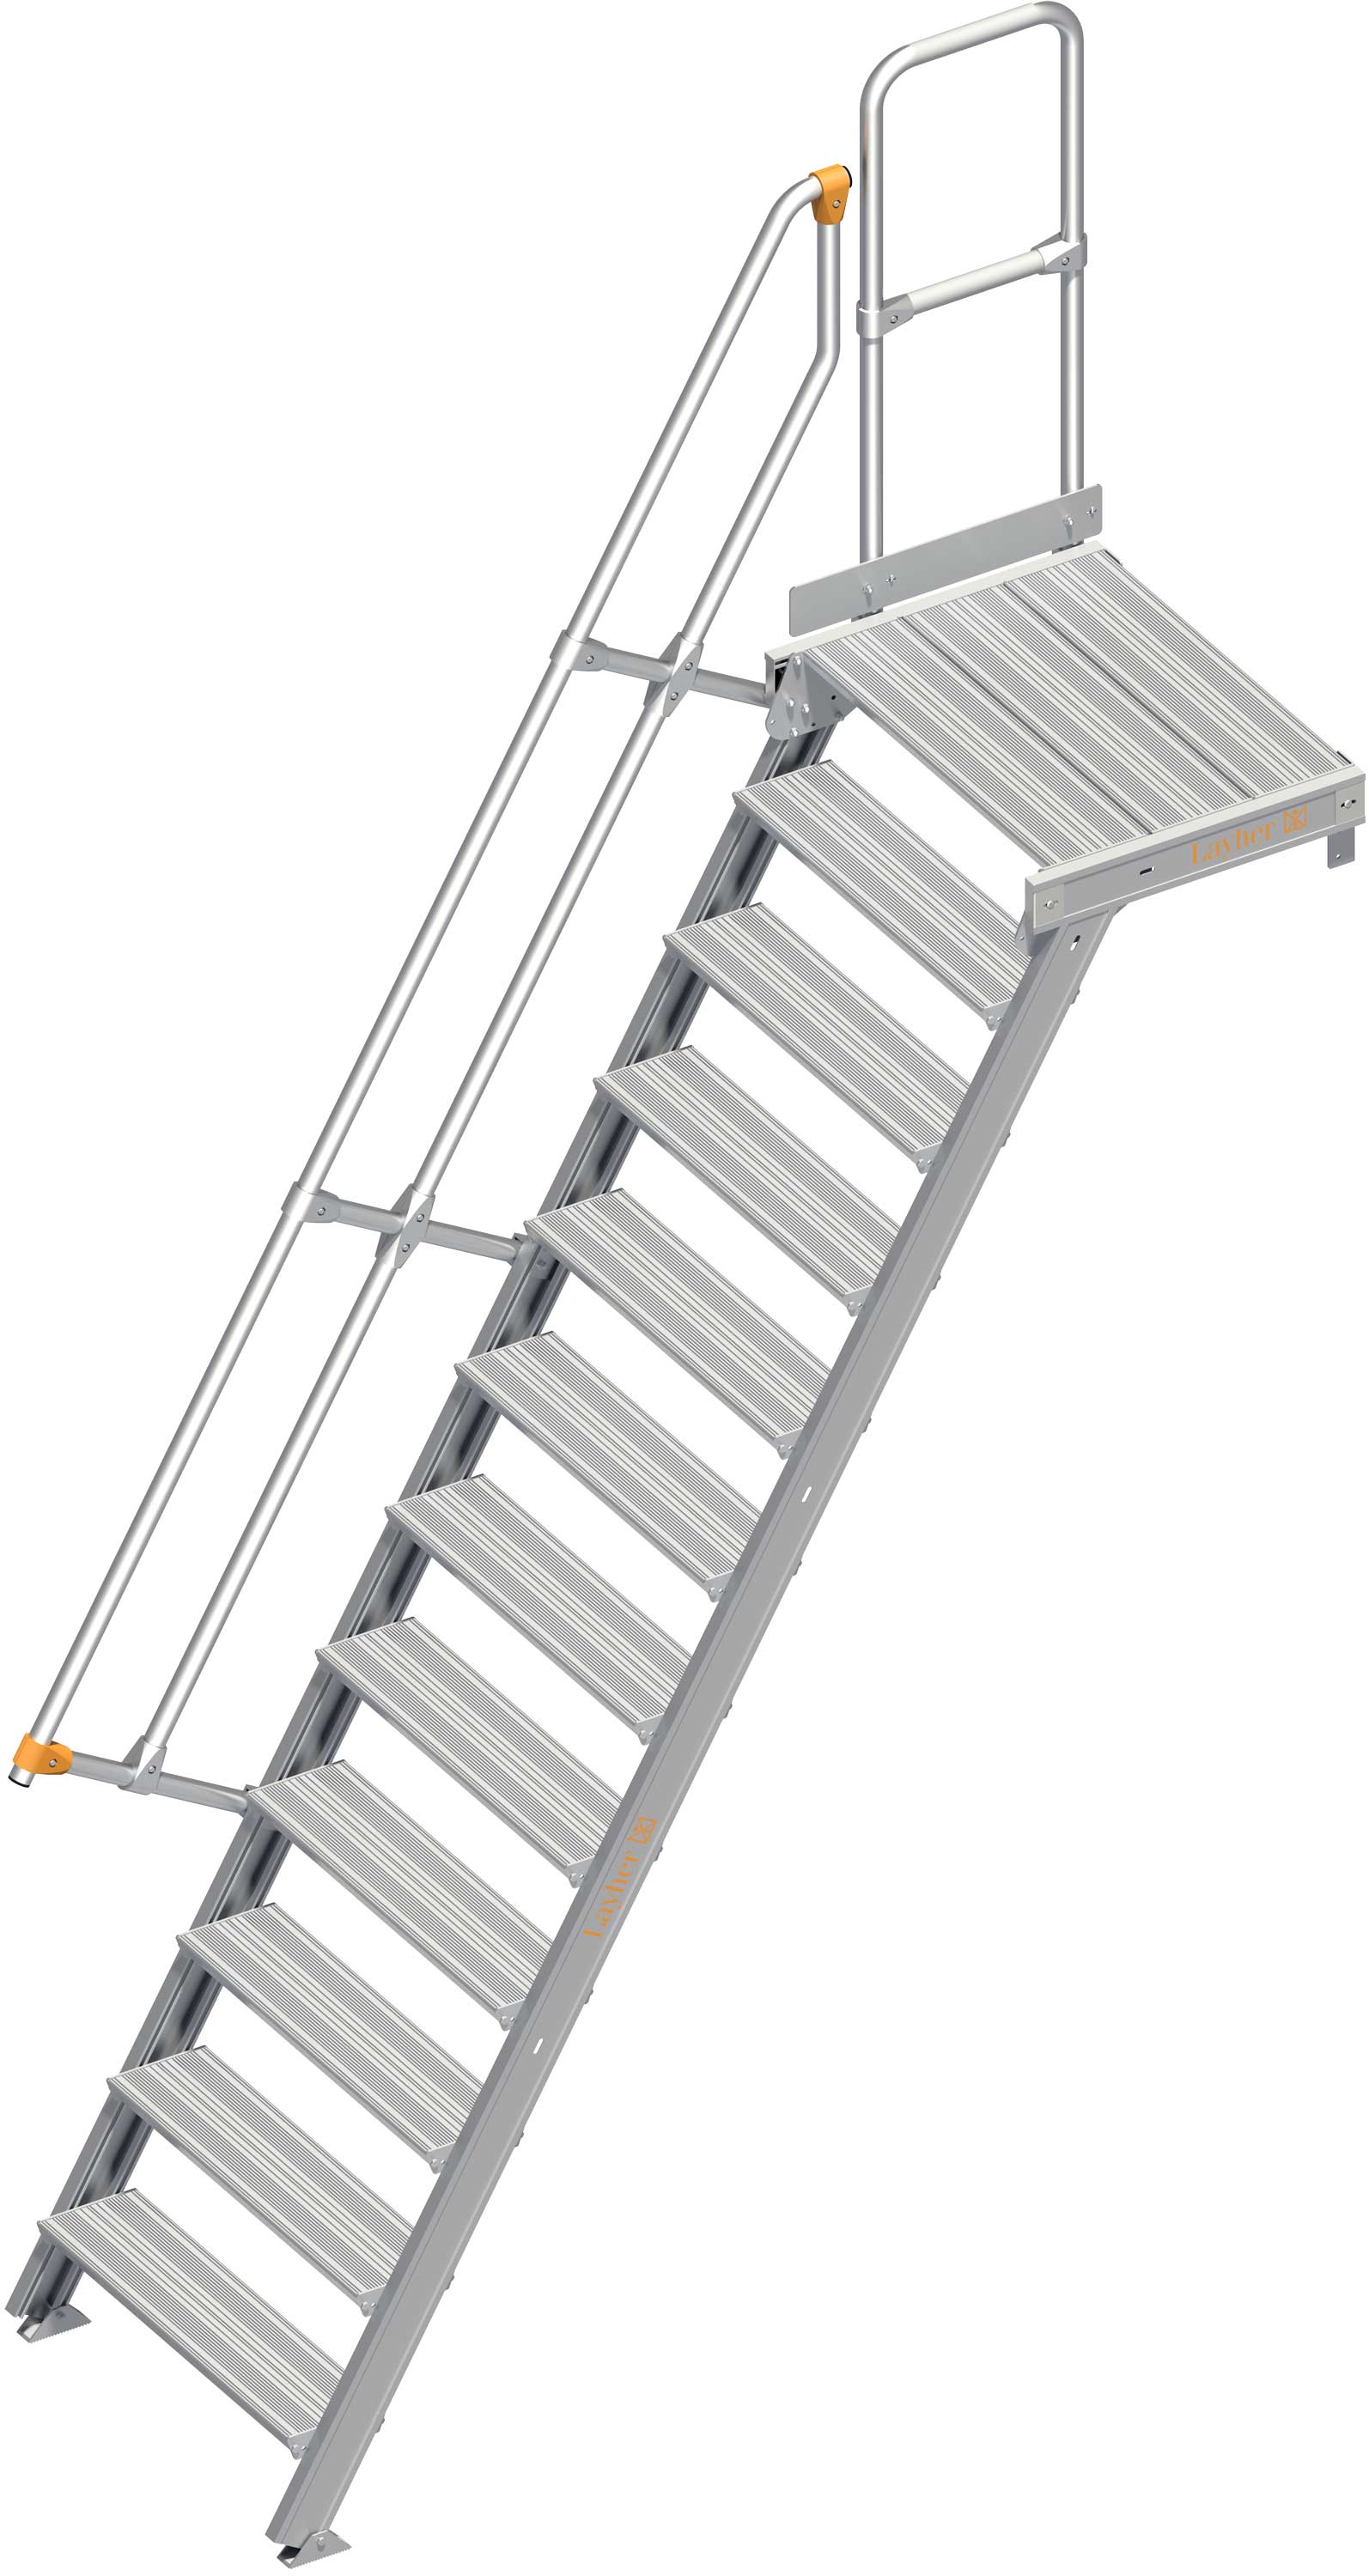 Layher Plattformtreppe 60° SG 12 Stufen - 800 mm breit